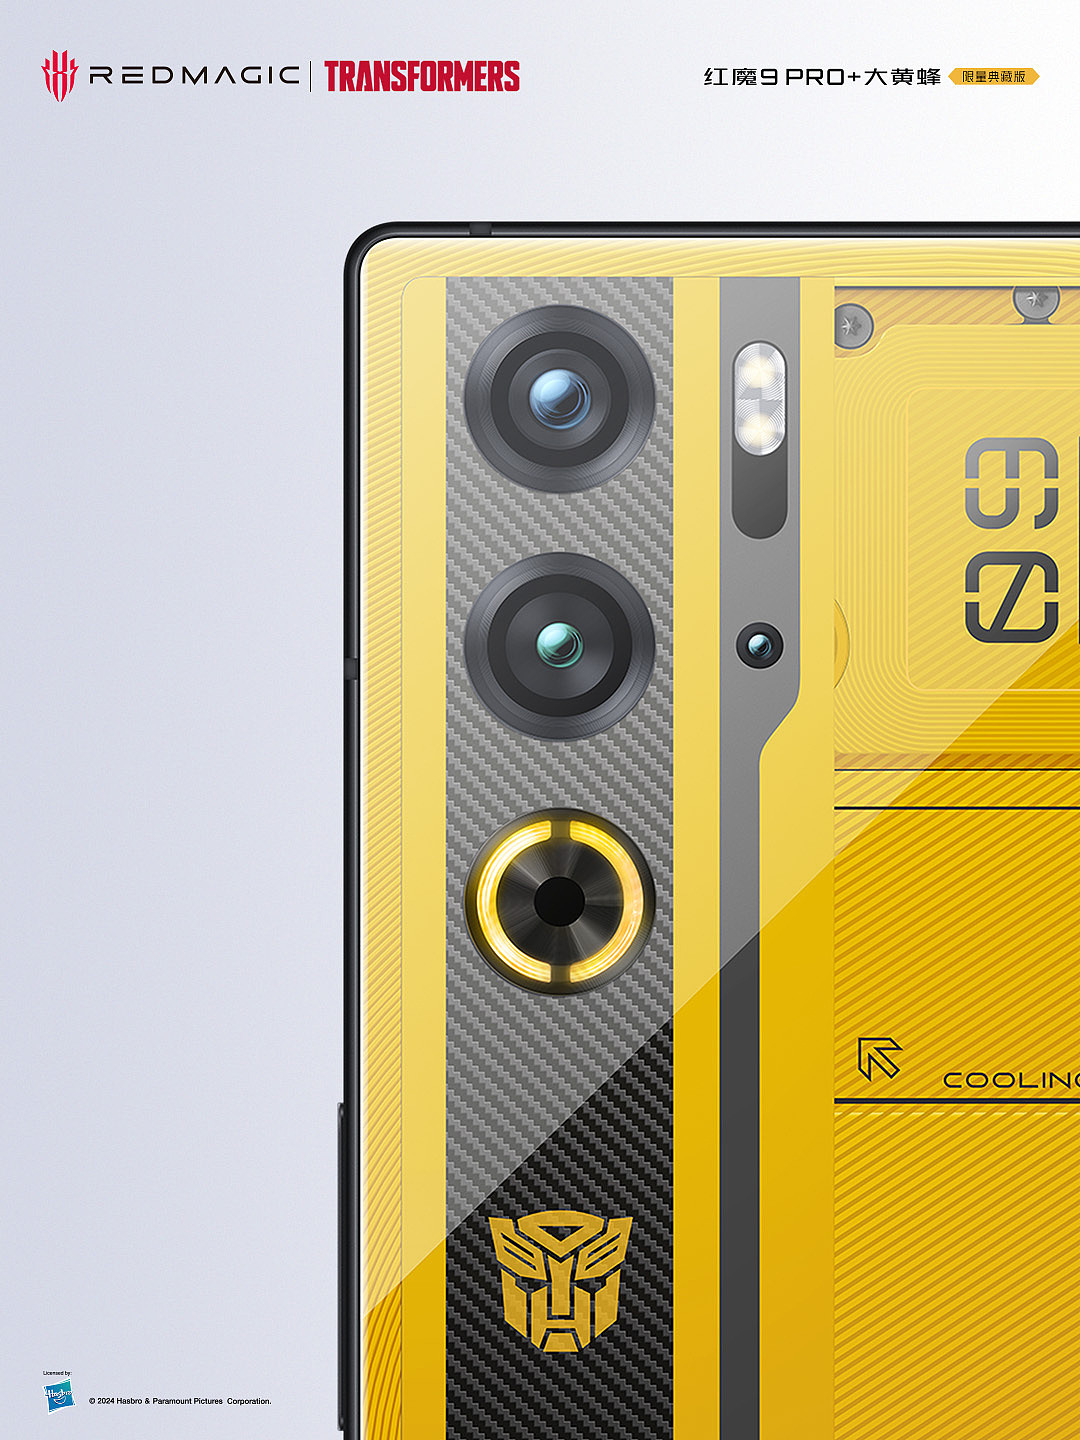 红魔 9 Pro + 变形金刚大黄蜂限量版手机外观公布：黑黄撞色 + 氘锋透明设计 - 3